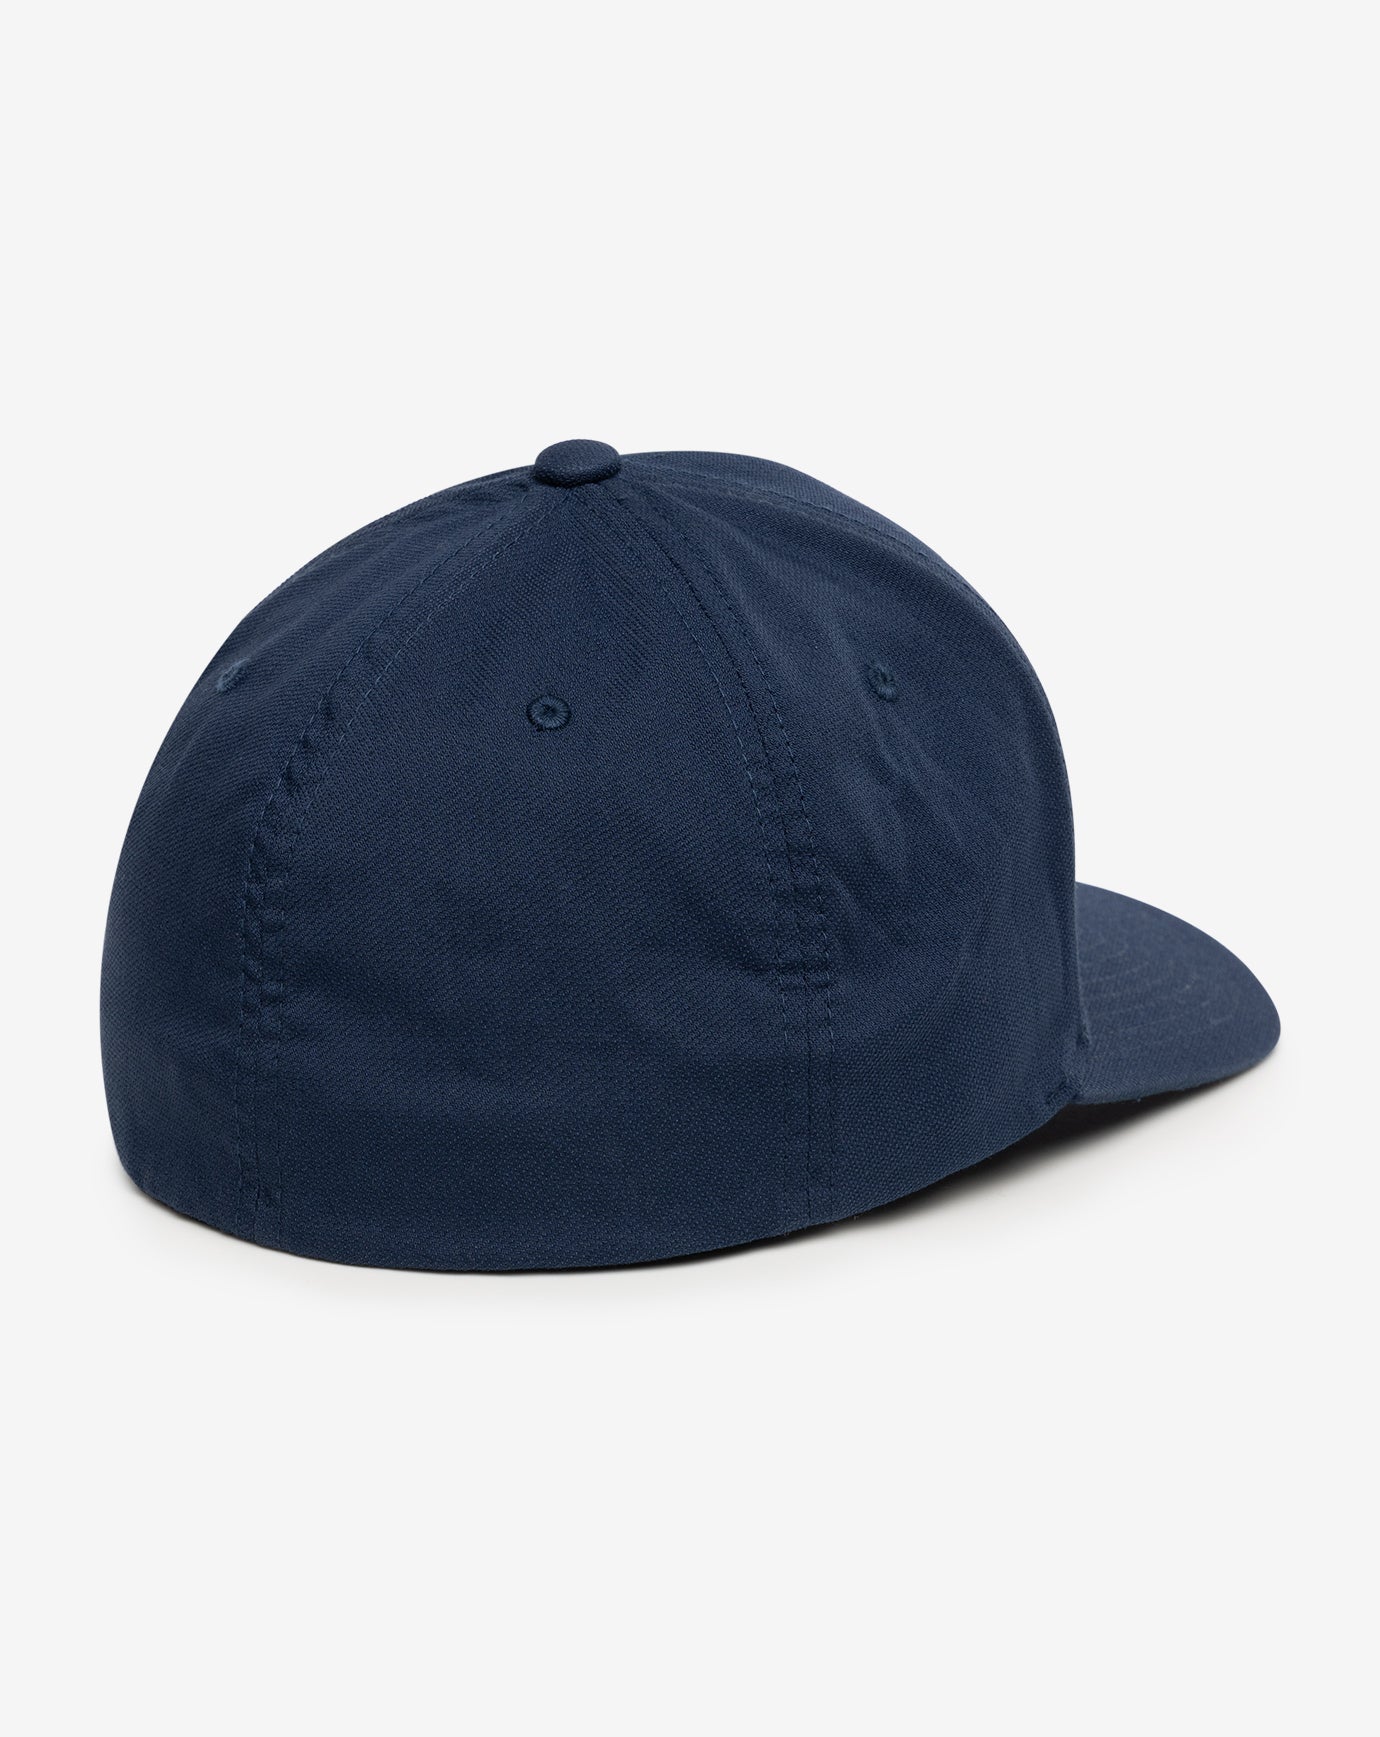 TravisMathew Tejate Hat (Non-Current)